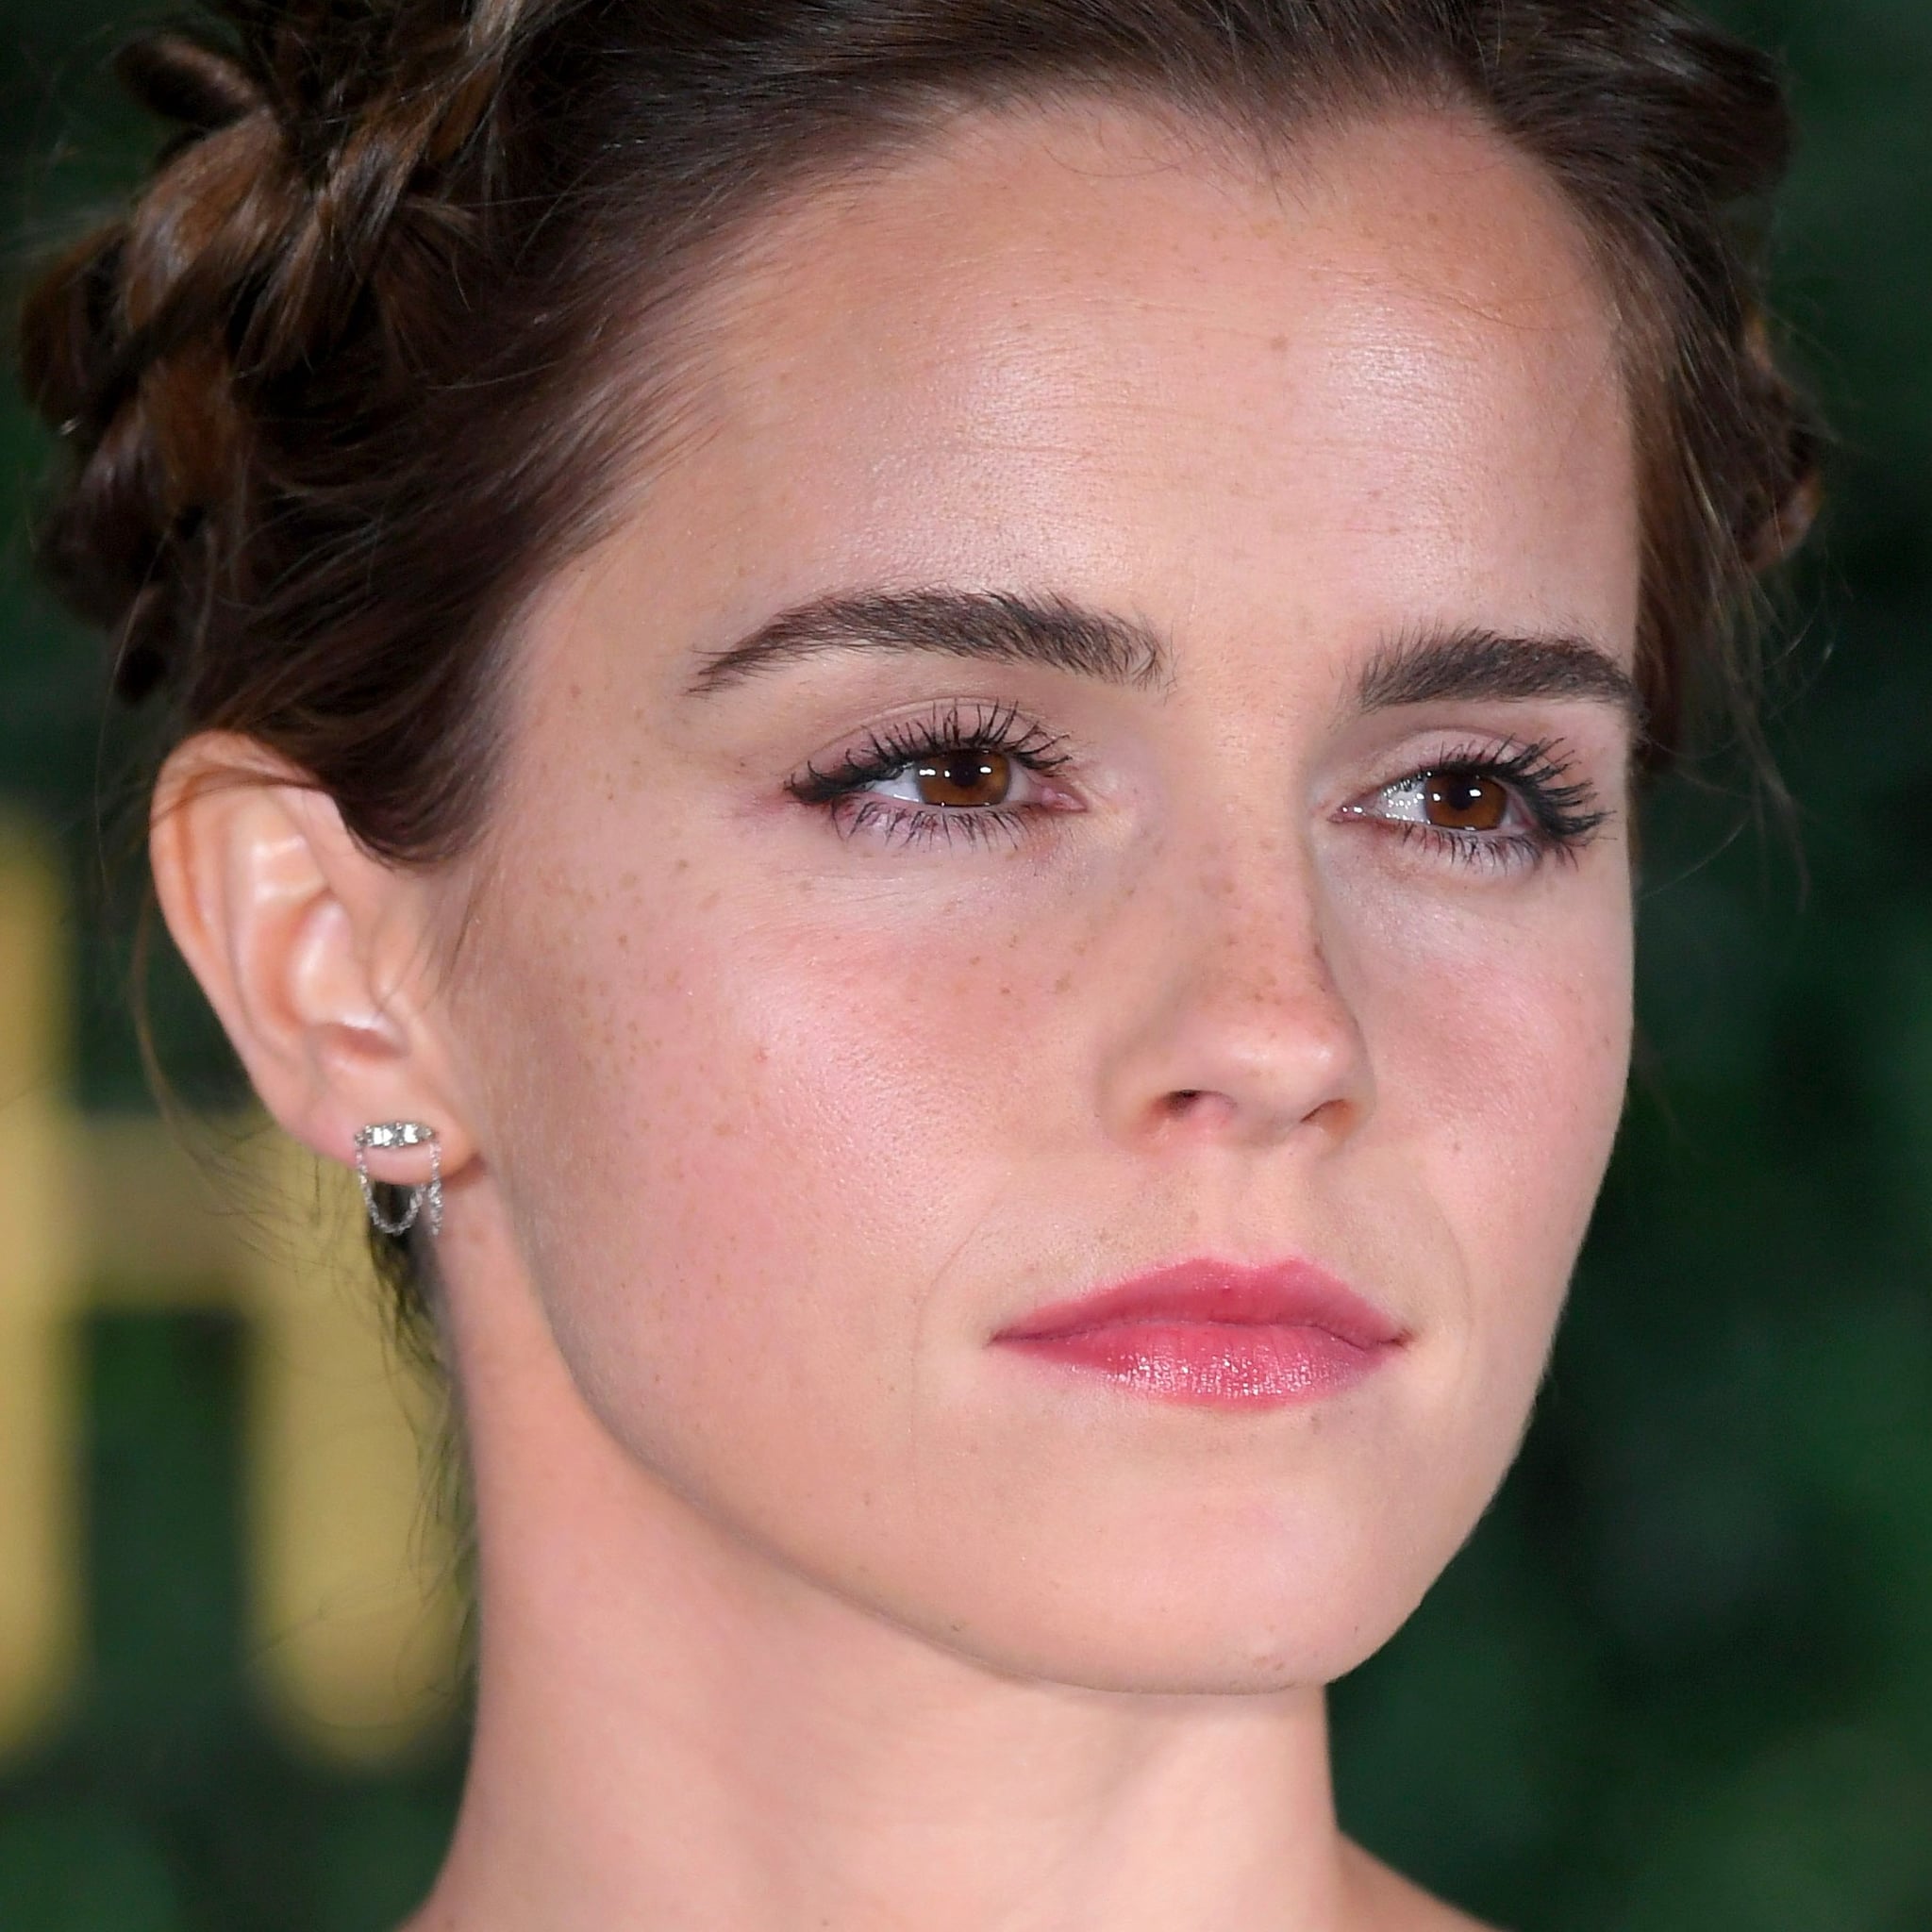 Does Emma Watson Wear Makeup